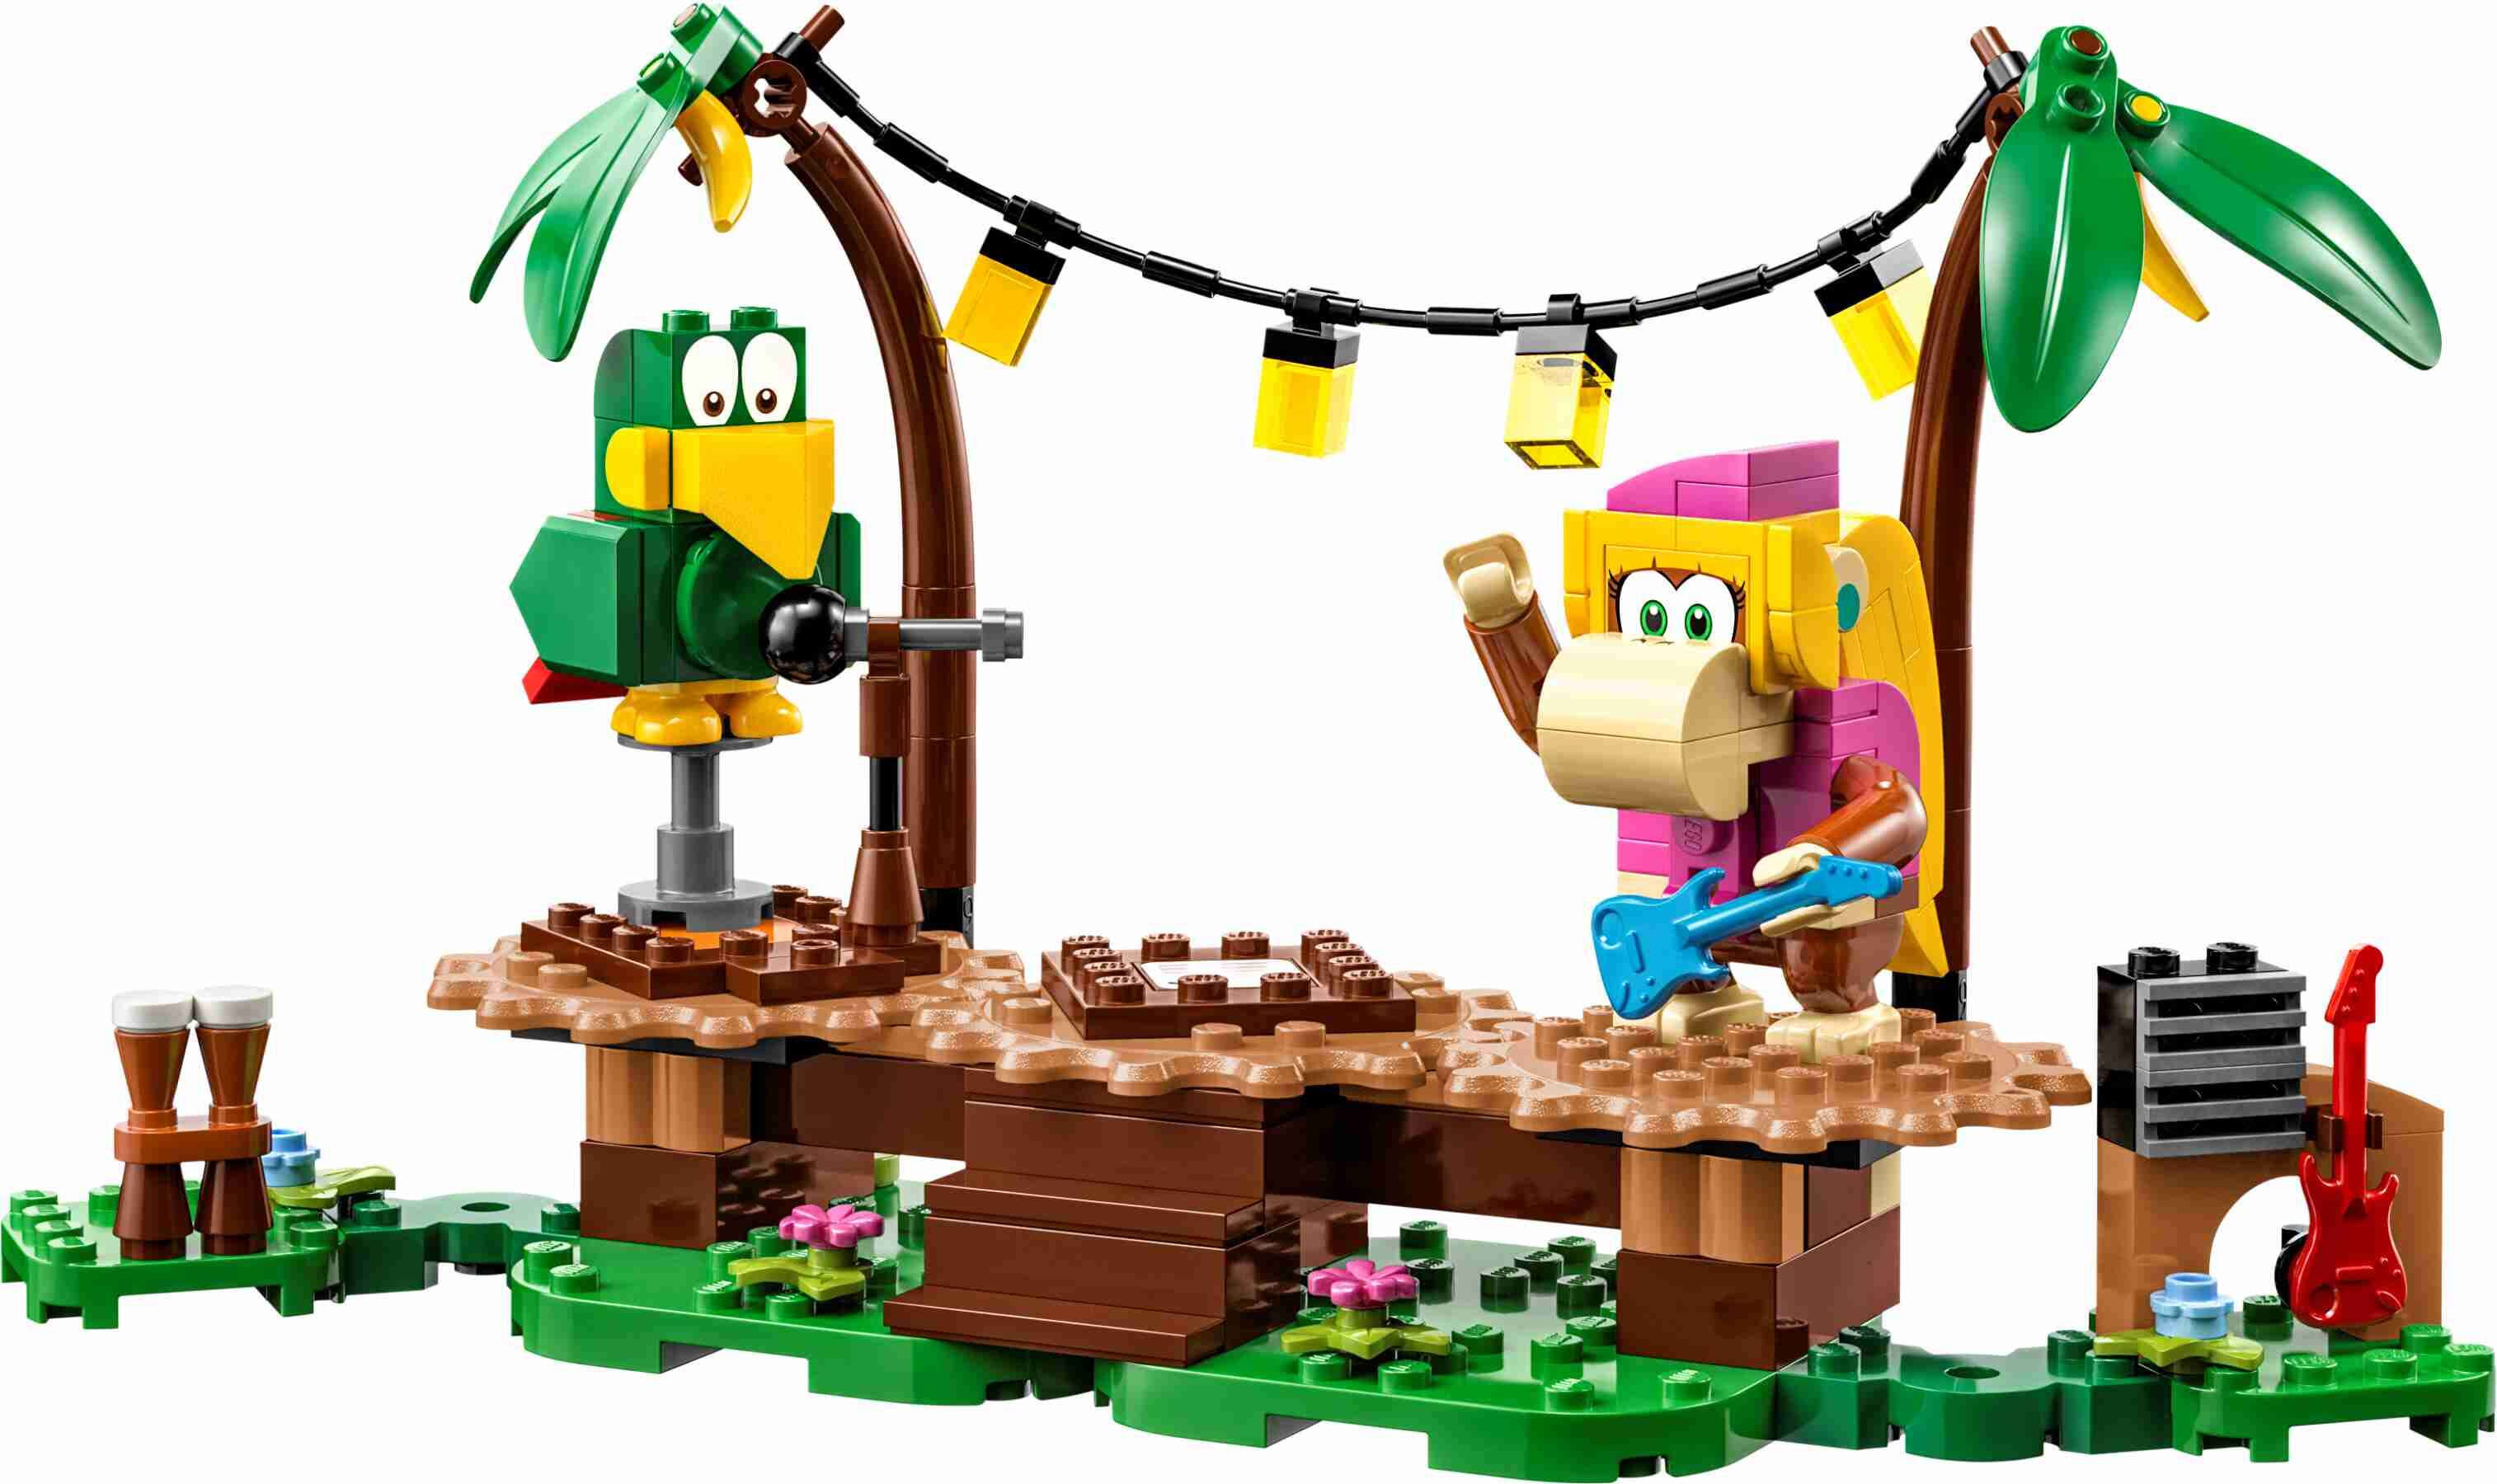 LEGO 71421 Super Mario Dixie Kongs Dschungel-Jam – Erweiterungsset